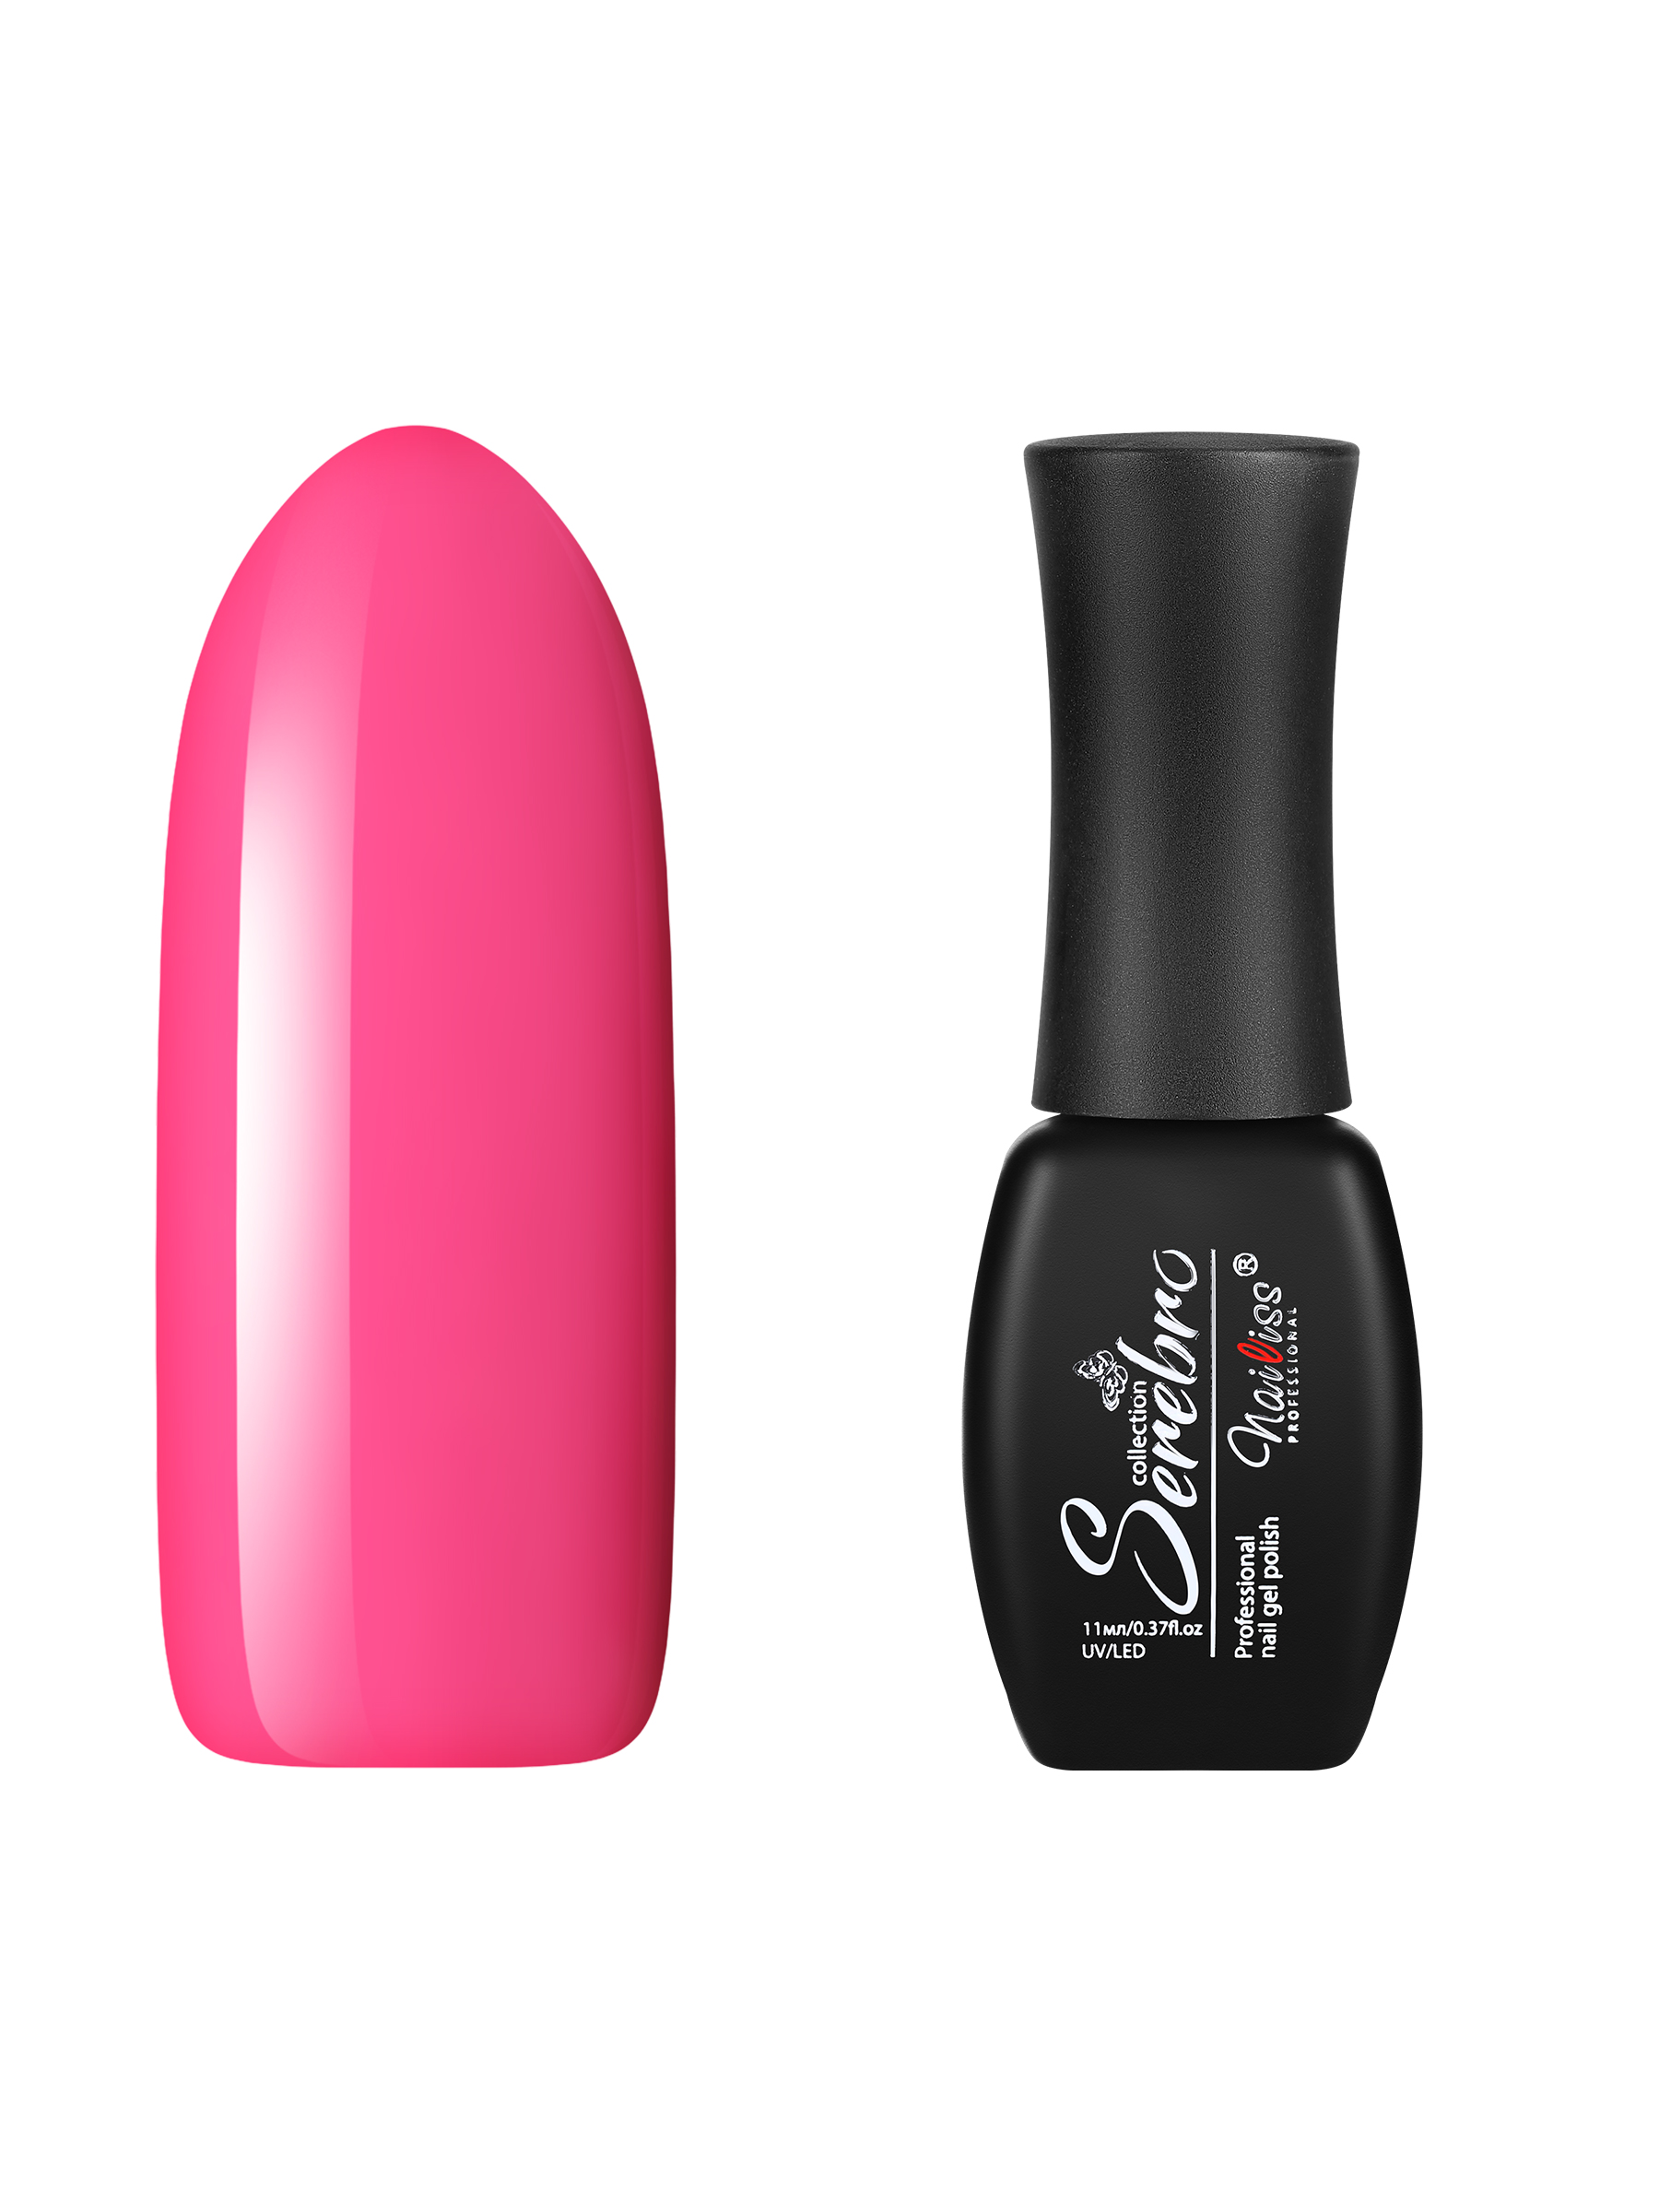 Гель-лак для ногтей Serebro, плотный, цветной, гипоаллергенный, яркий розовый, 11 мл